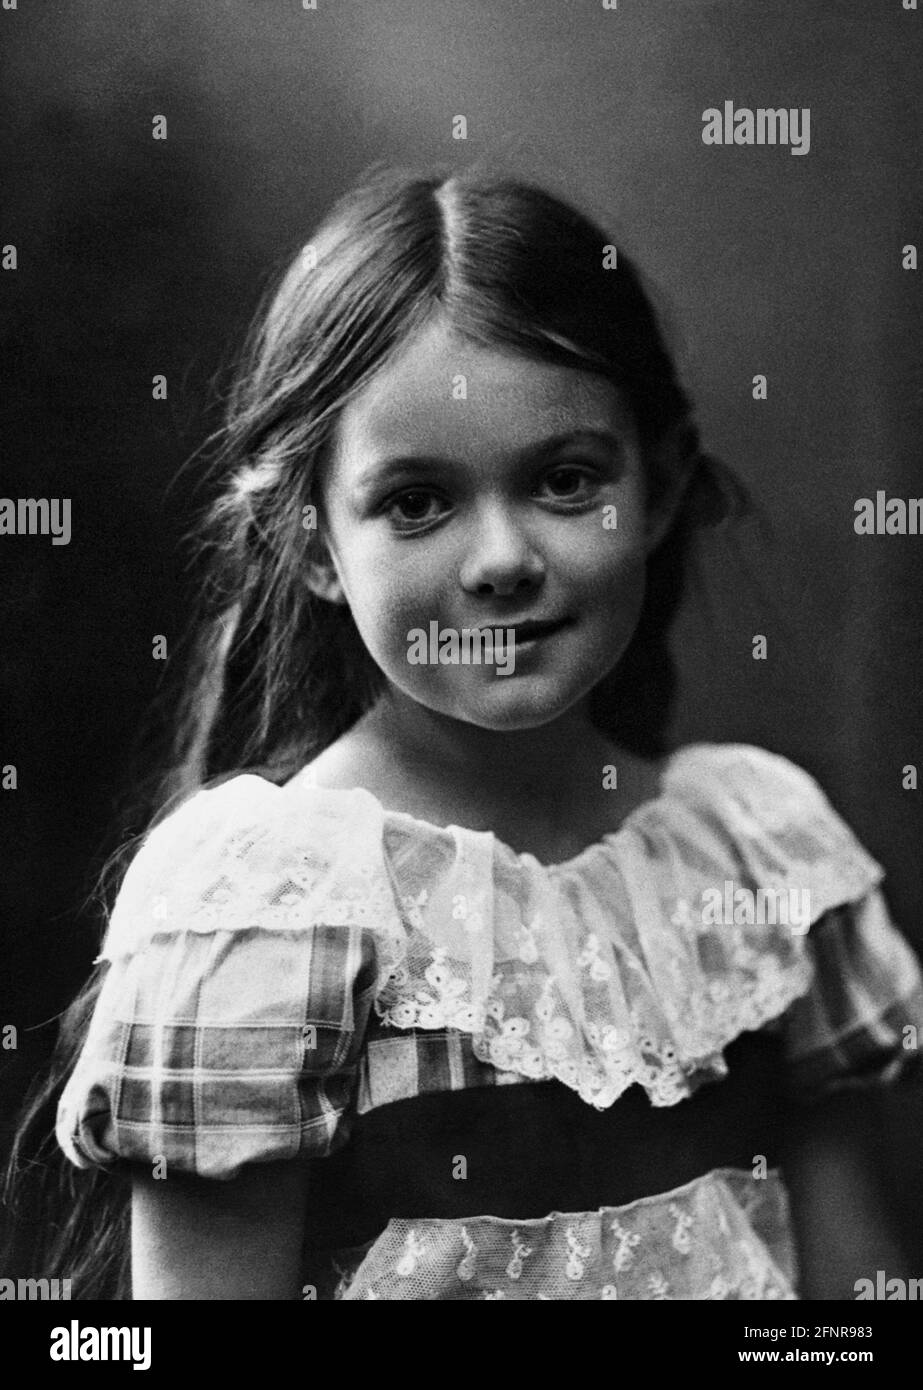 1908 ca. , SCHWEDEN : die schwedische Dichterin , Schriftstellerin und Traslatorin KARIN MARIA BOYE ( 1900 - 1941 ), als ein kleines Mädchen war . Unbekannter Fotograf. - POET - POETA - POETESSA - POESIE - POESIA - LETTERATURA - LITERATUR - traduttore - traduttrice - SVEZIA - SCRITTORE - SCRITTRICE - bambina - bambini - bambino - KIND - Kinder - KINDHEIT - INFANZIA - personalità da giovane giovani - Persönlichkeiten der Persönlichkeit als jung war -- - ARCHIVIO GBB Stockfoto